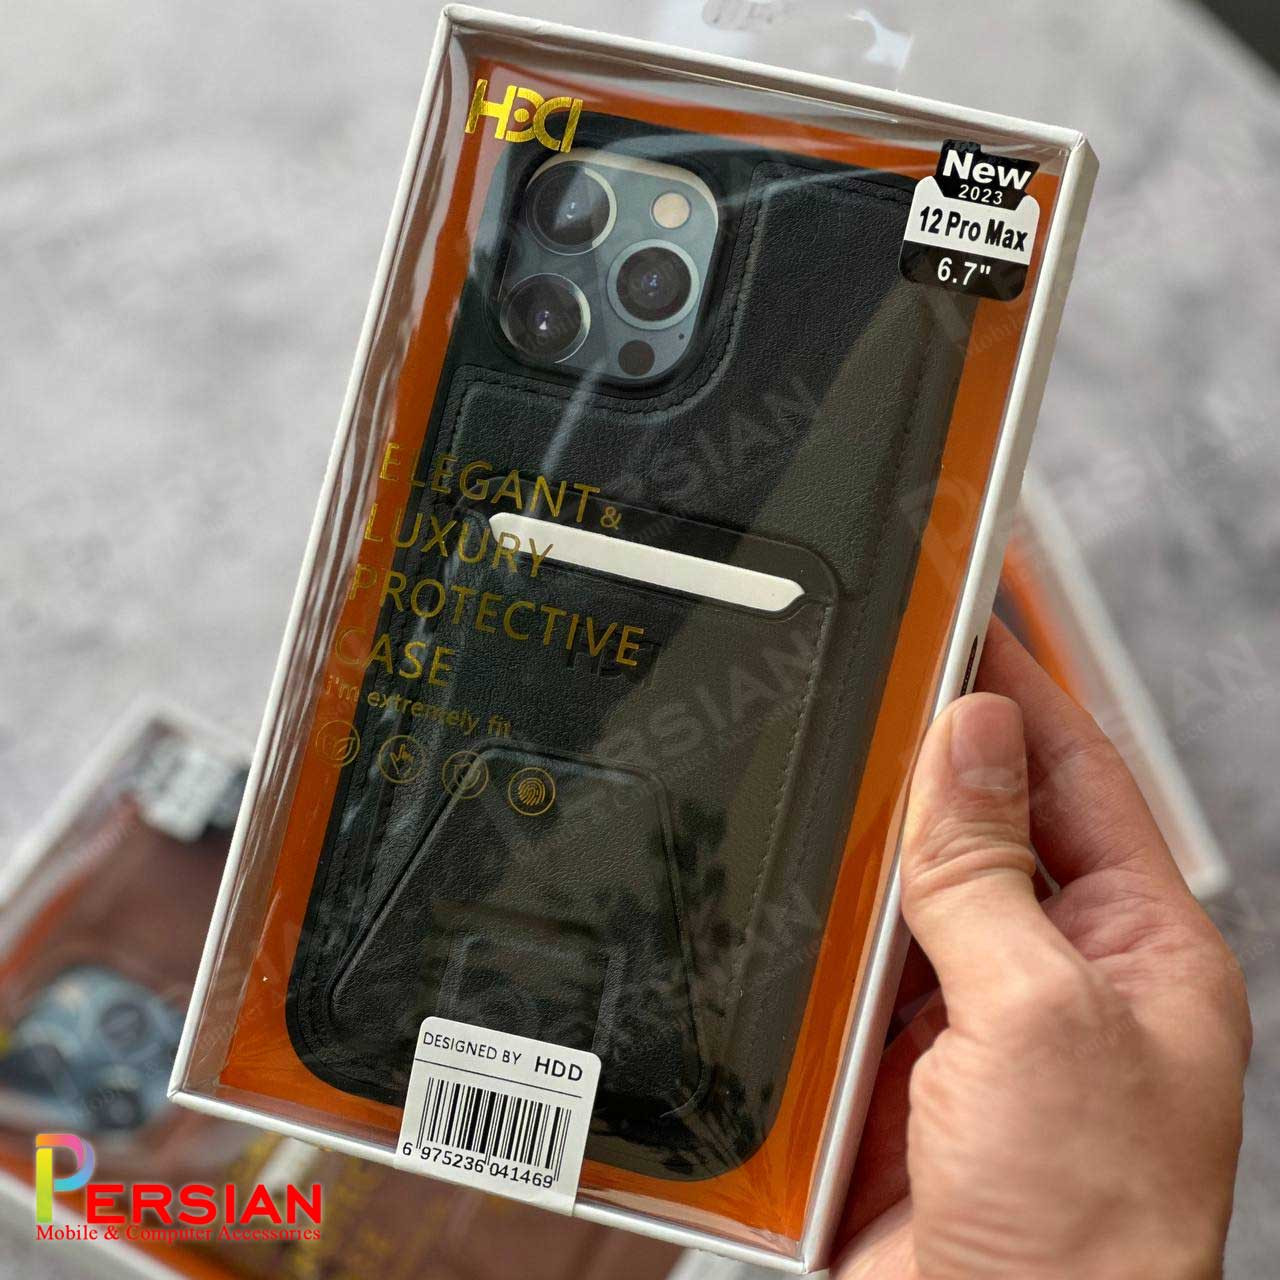 قاب چرمی و جاکارتی استند شو آیفون 11 پرو مکس اچ دی دی HDD iphone 11 Pro Max Card Holder Leather Case